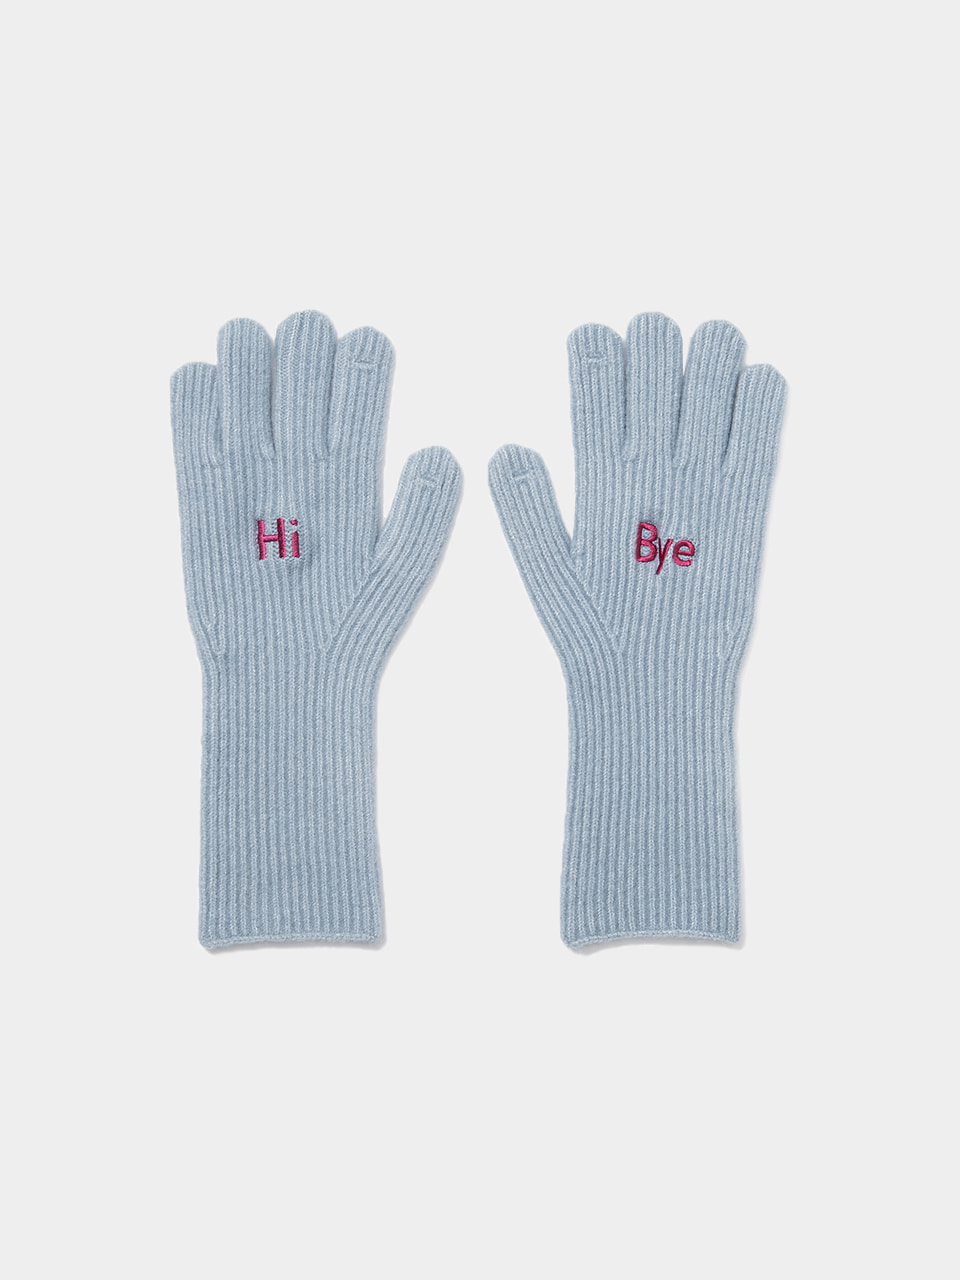 [12/20 순차발송]hi bye wool gloves - 2colorBRENDA BRENDEN